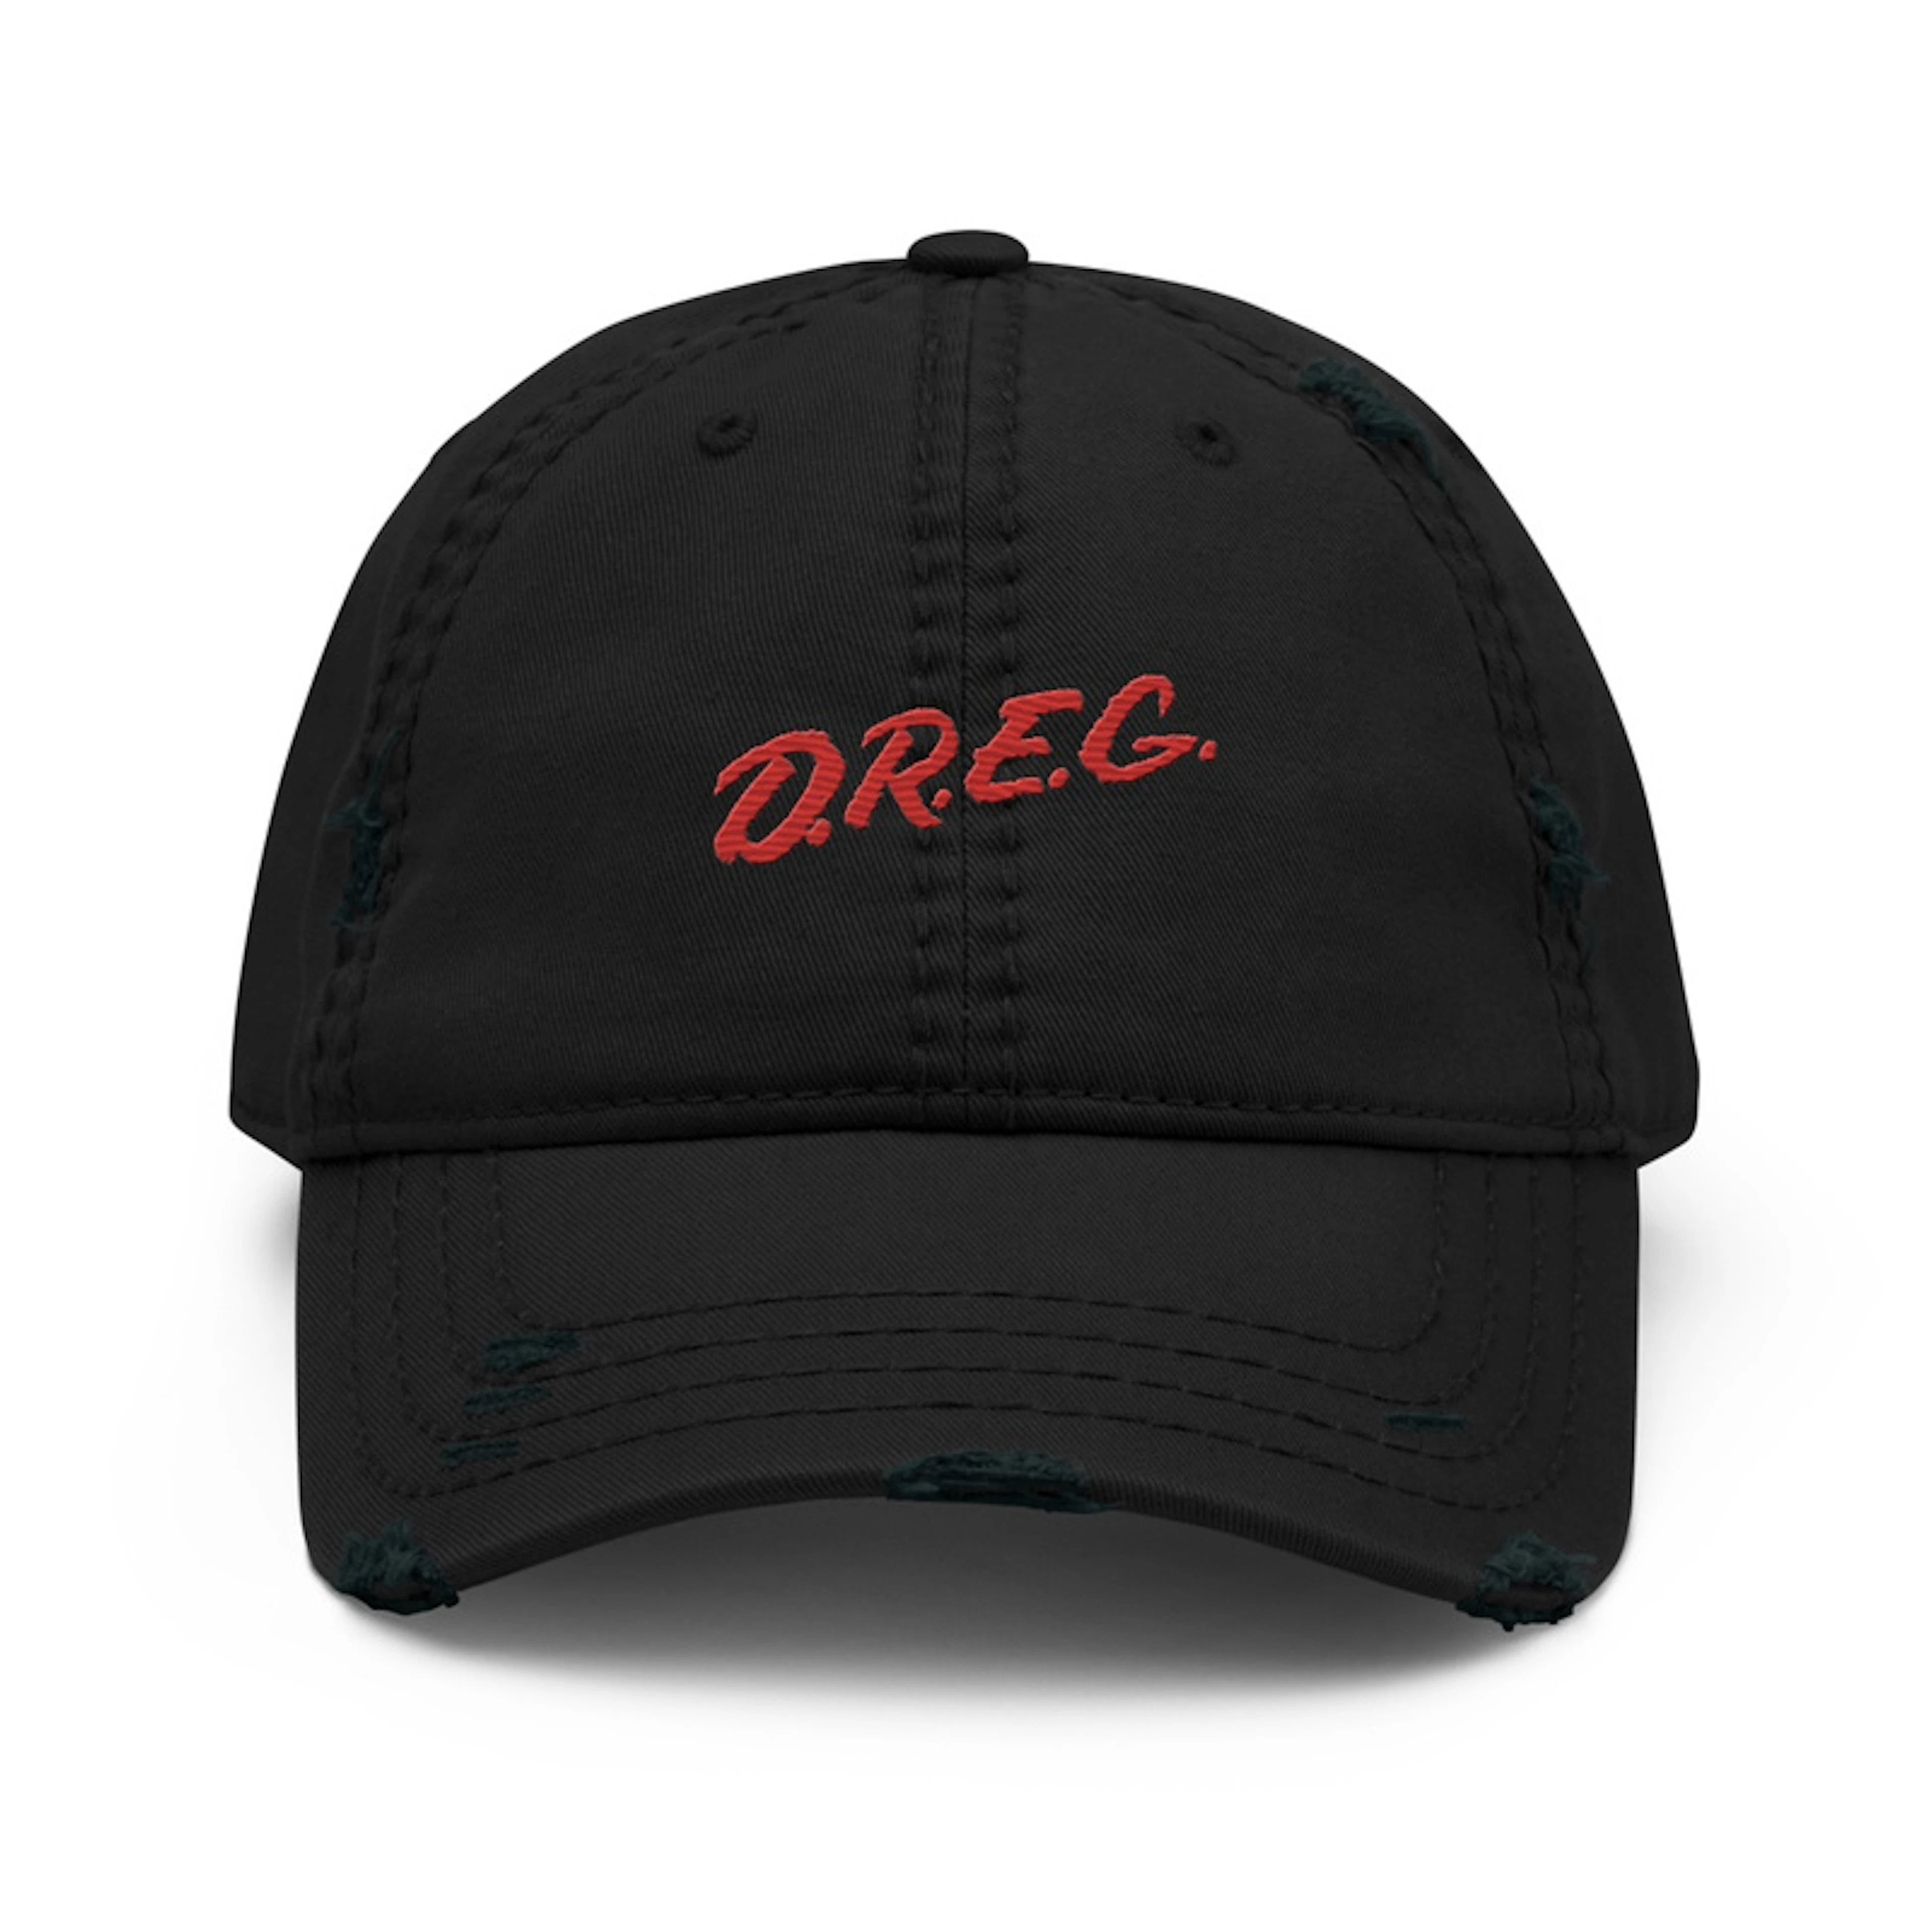 Tattered D.R.E.G. Hat